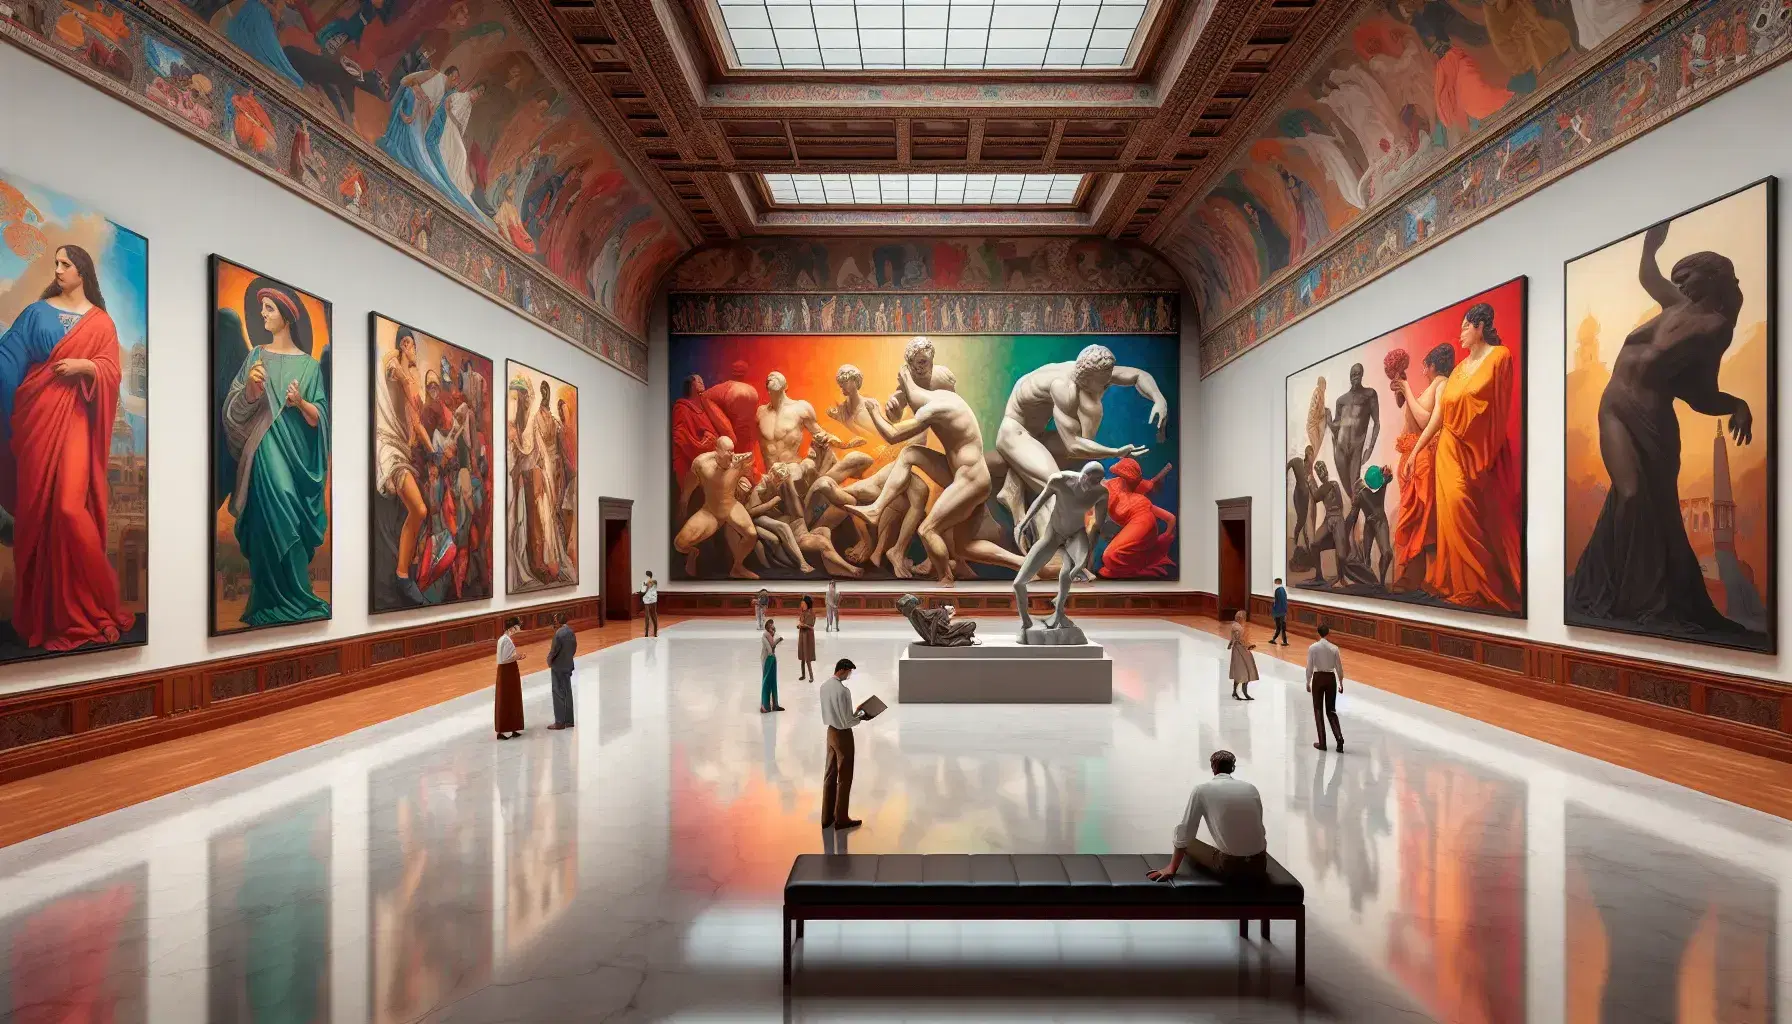 Interior de sala de arte con mural colorido de figuras humanas y escultura de bronce en pose pensativa, visitantes observando y luz natural.